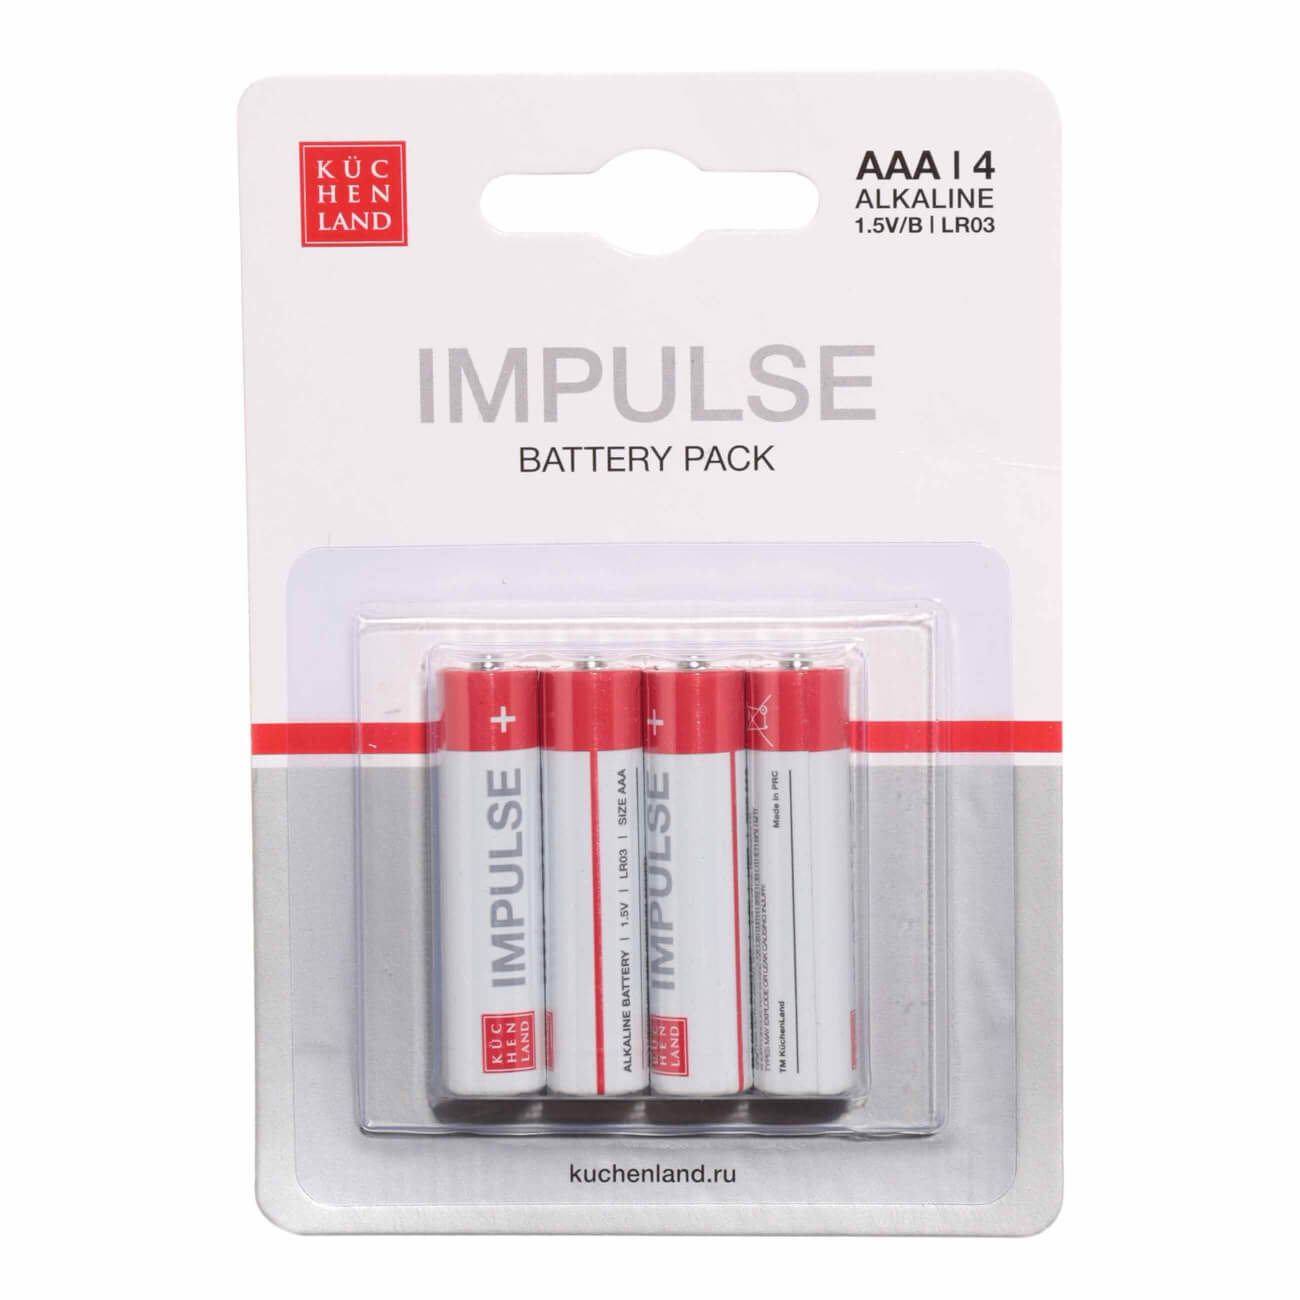 Батарейка AAA LR03, щелочная, 4 шт, Impulse батарейка aa lr6 щелочная 6 шт impulse